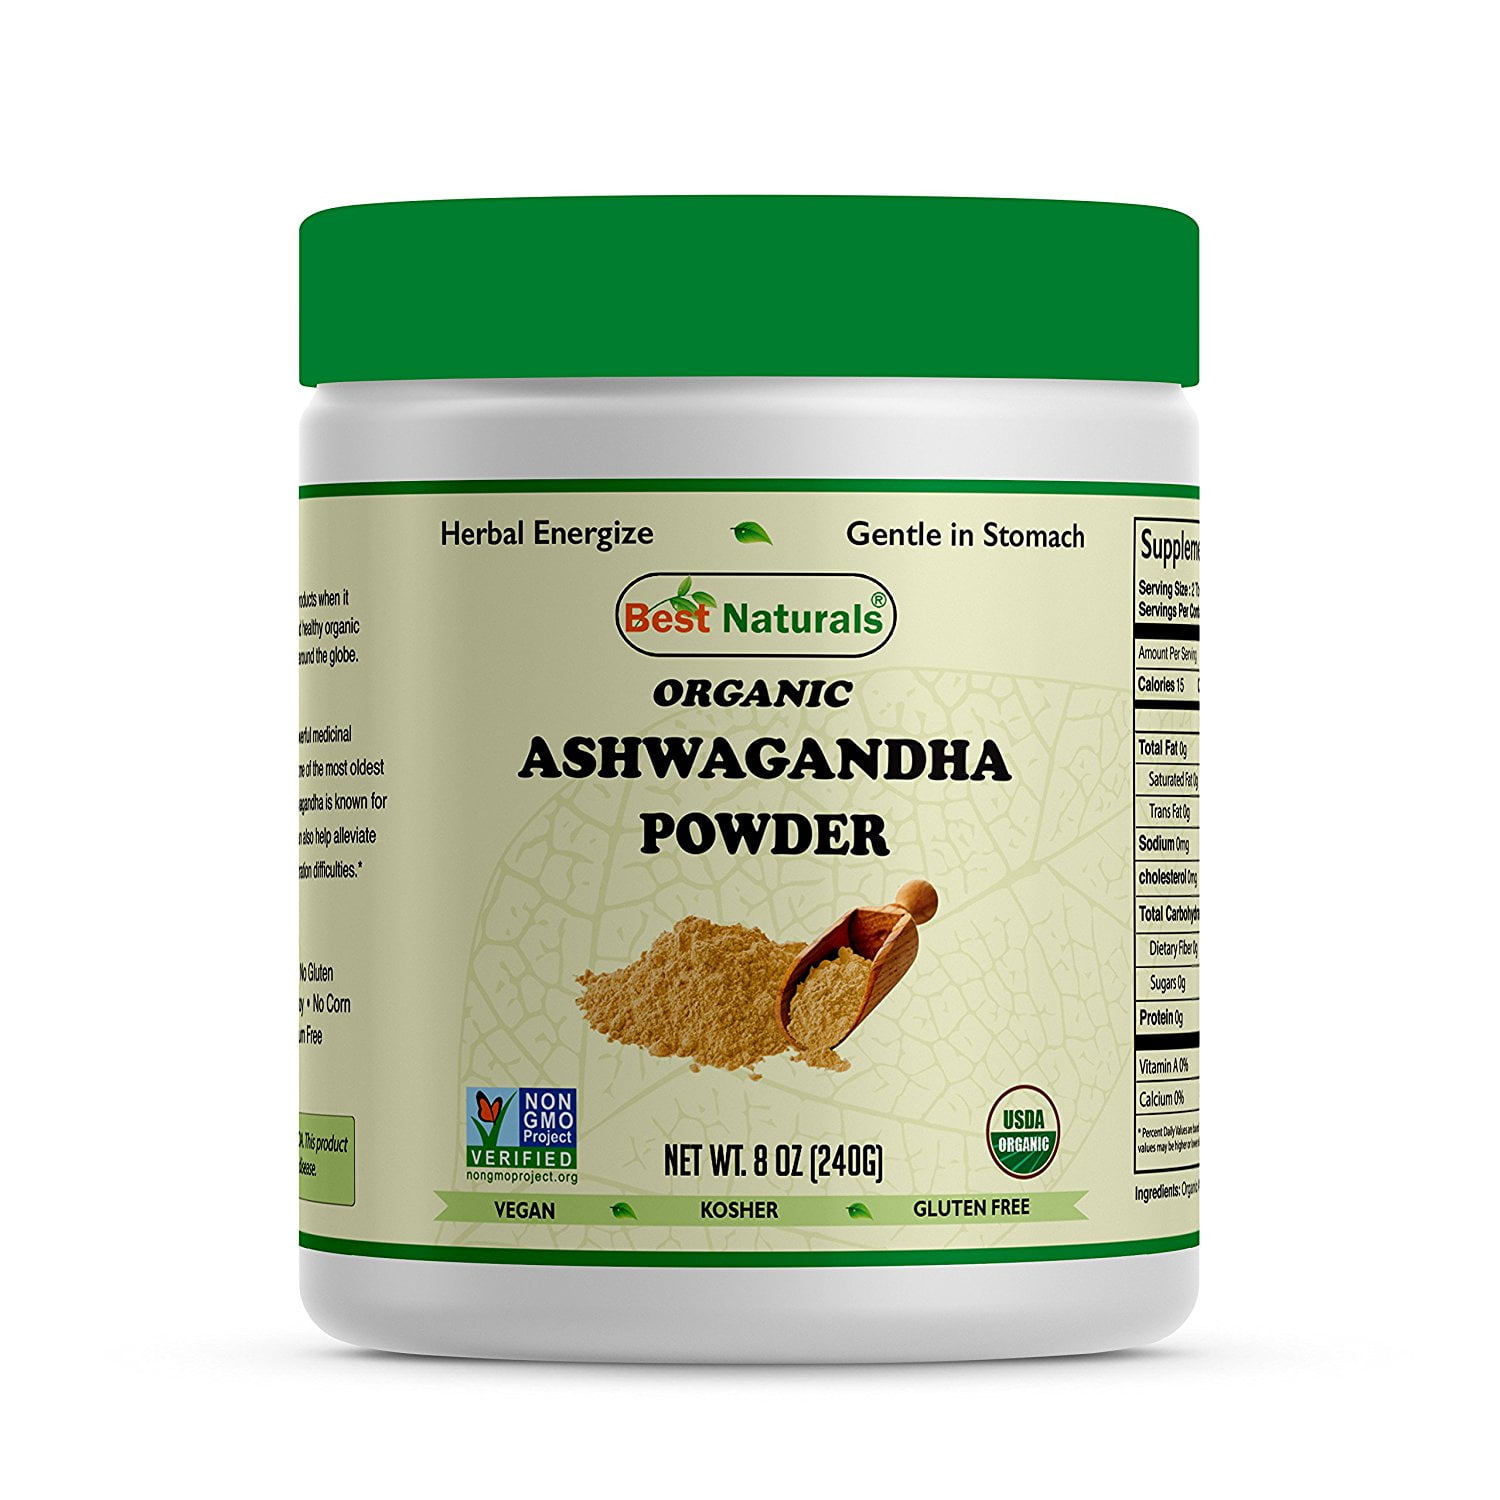 how to use powdered ashwagandha